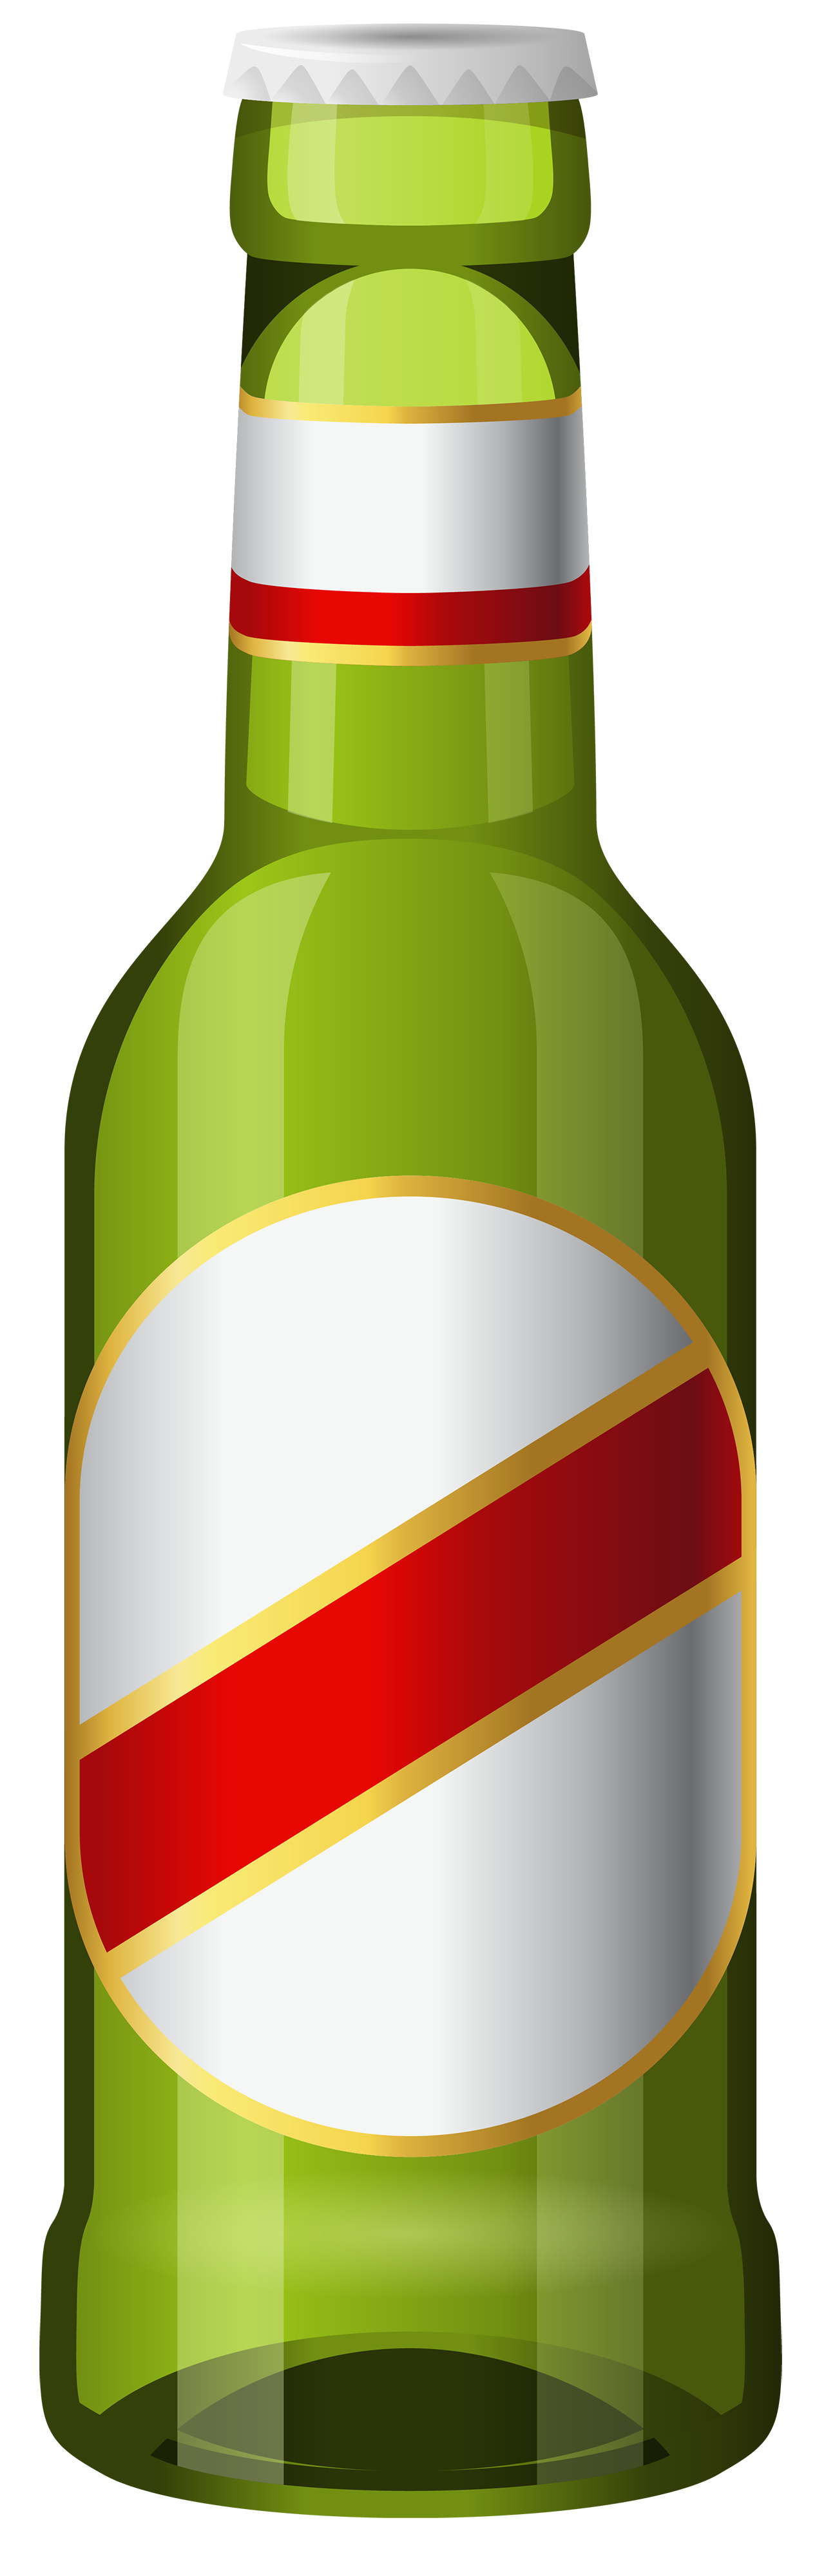 Bottle of beer clipart